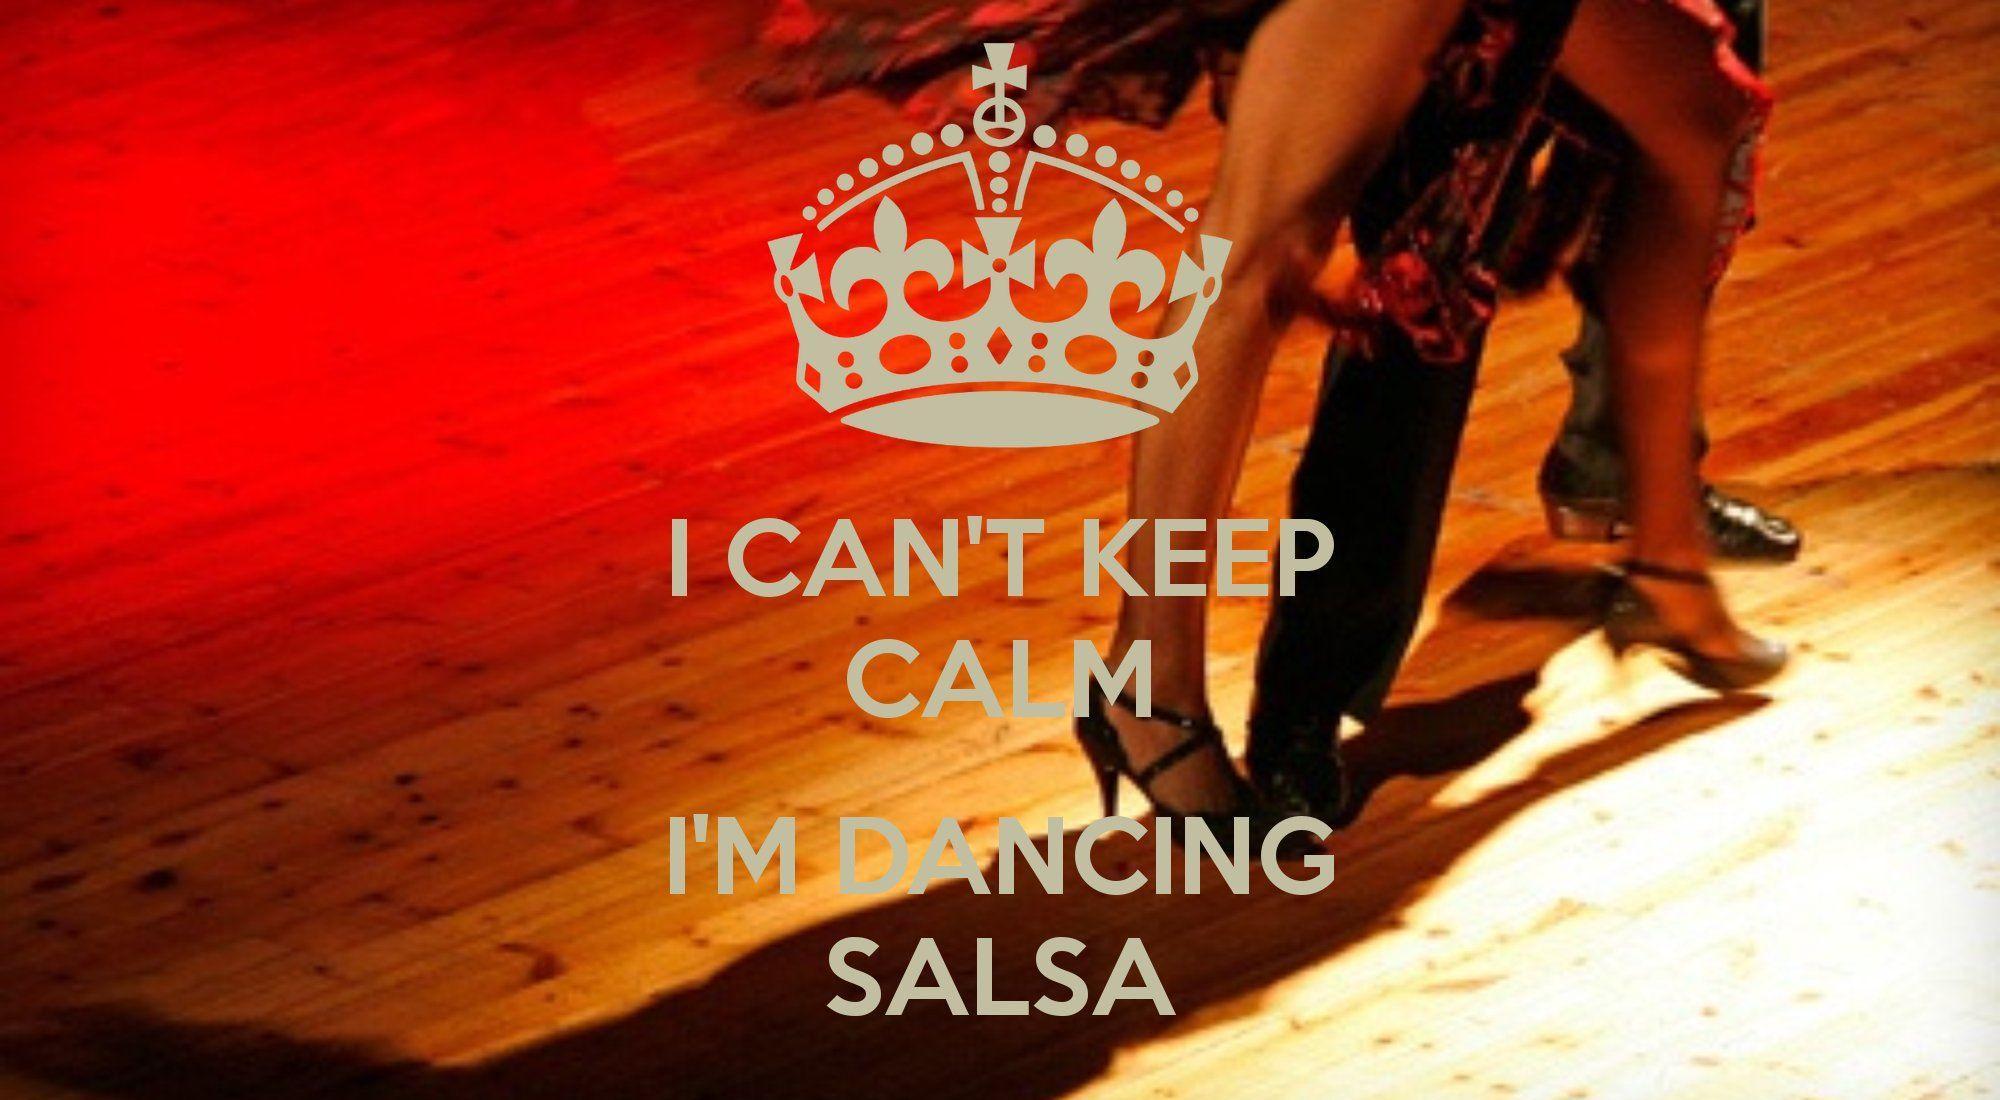 Salsa Wallpaper, HDQ Salsa Image Collection for Desktop, VV.69